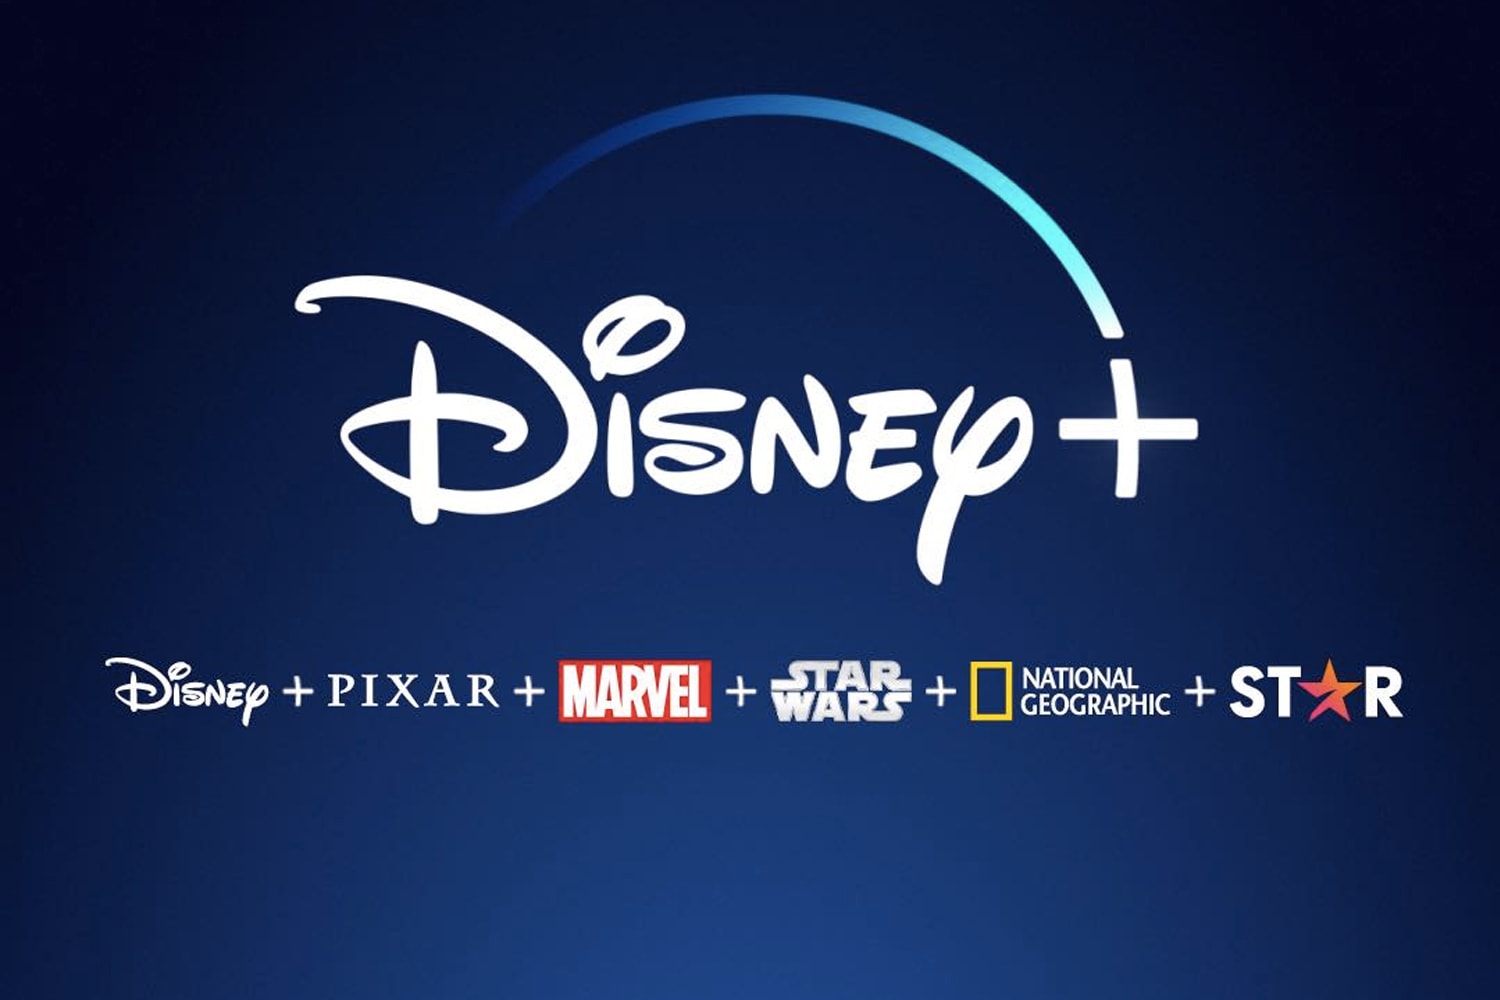 知名串流影音平台 Disney+ 即將登陸香港及台灣